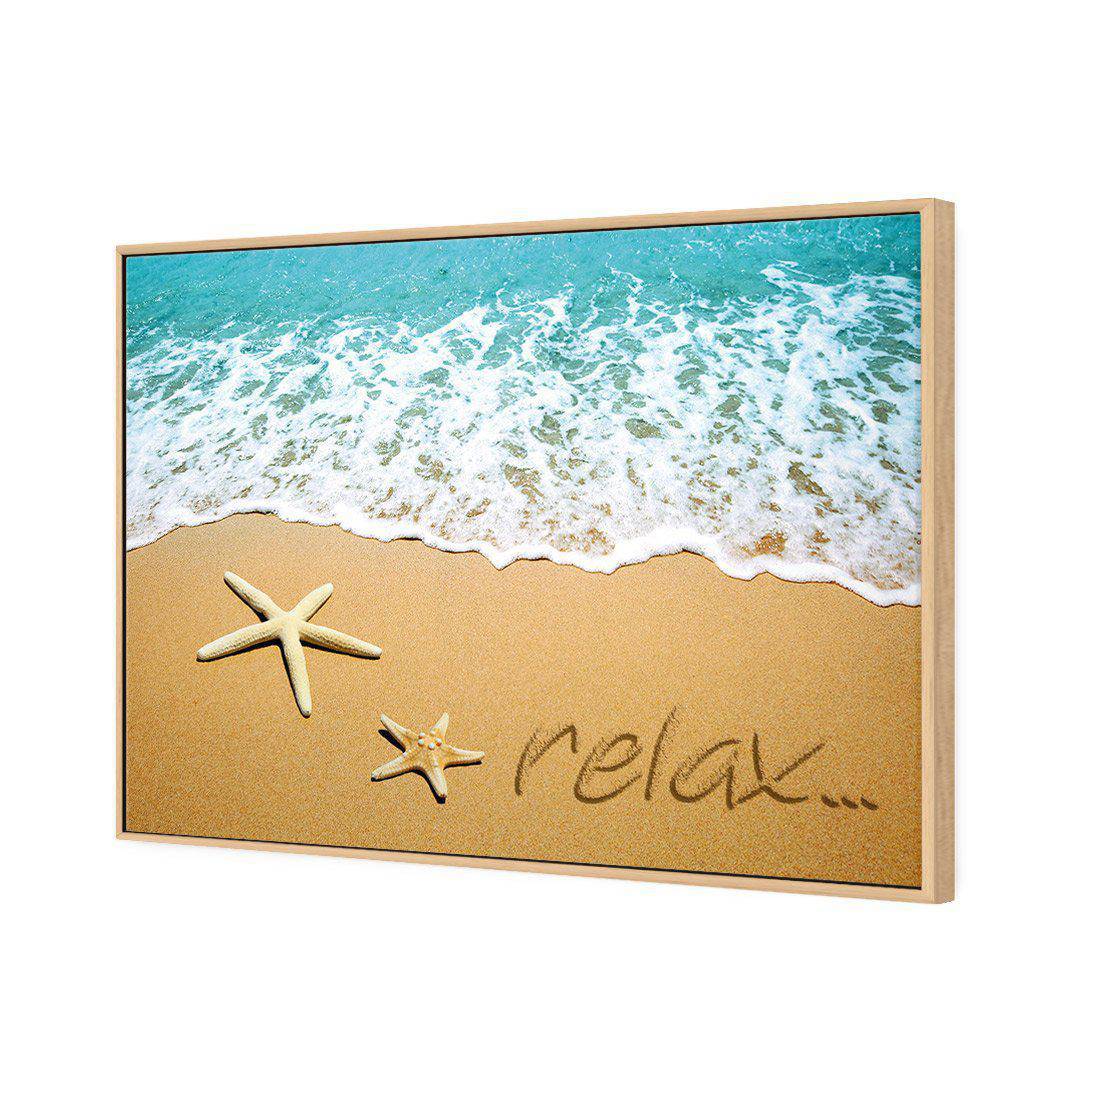 Relax Inspire Canvas Art-Canvas-Wall Art Designs-45x30cm-Canvas - Oak Frame-Wall Art Designs